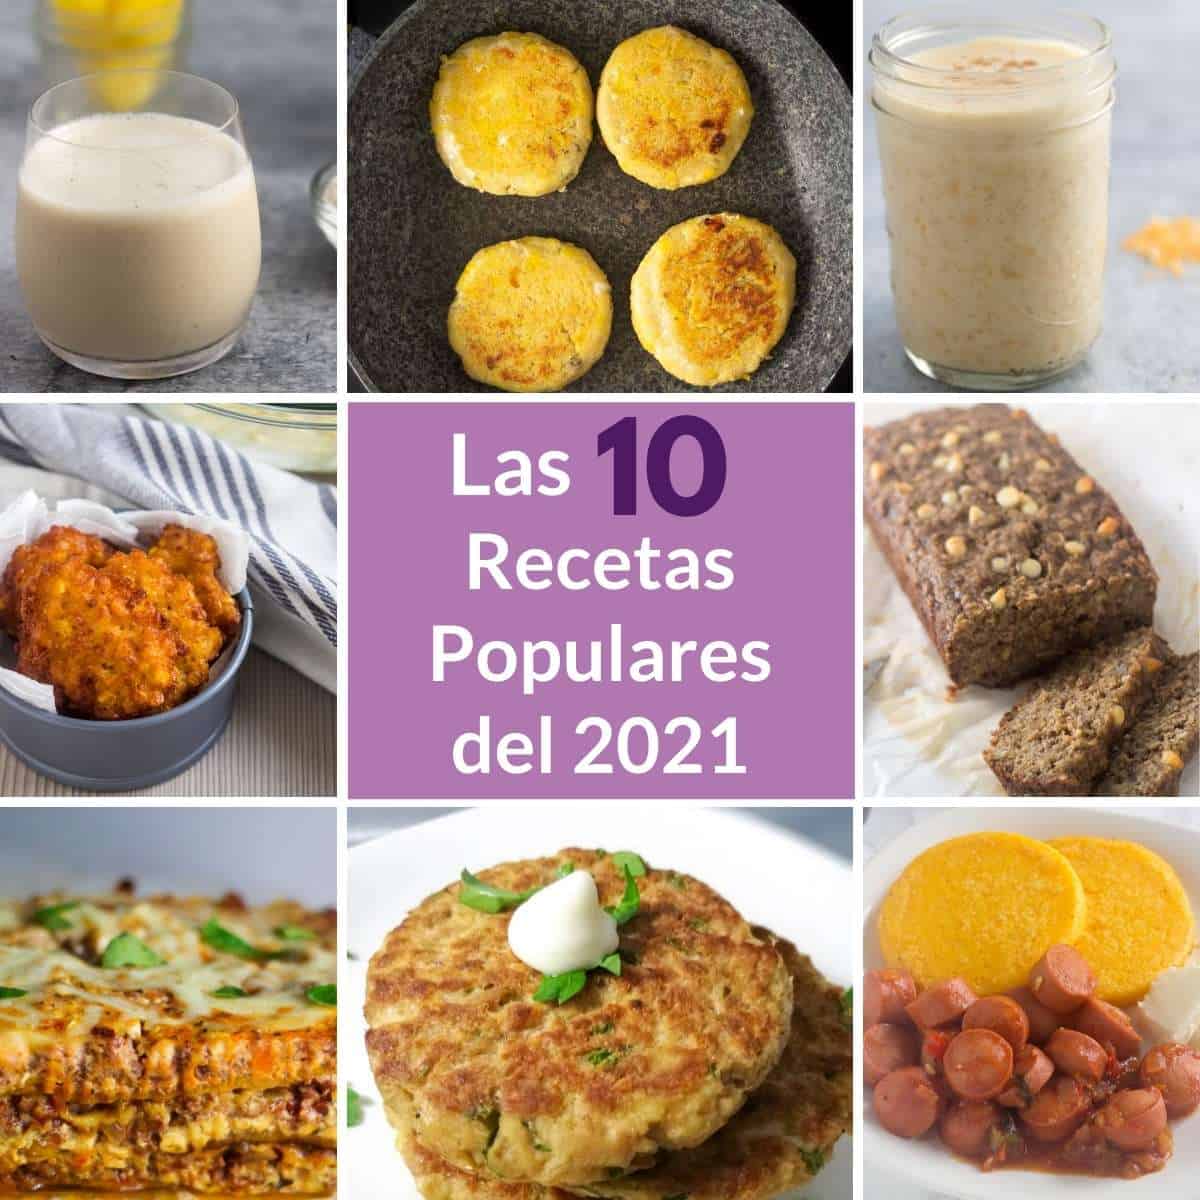 un collage de 8 platos terminados y un texto superpuesto "Las 10 mejores recetas de 2021".